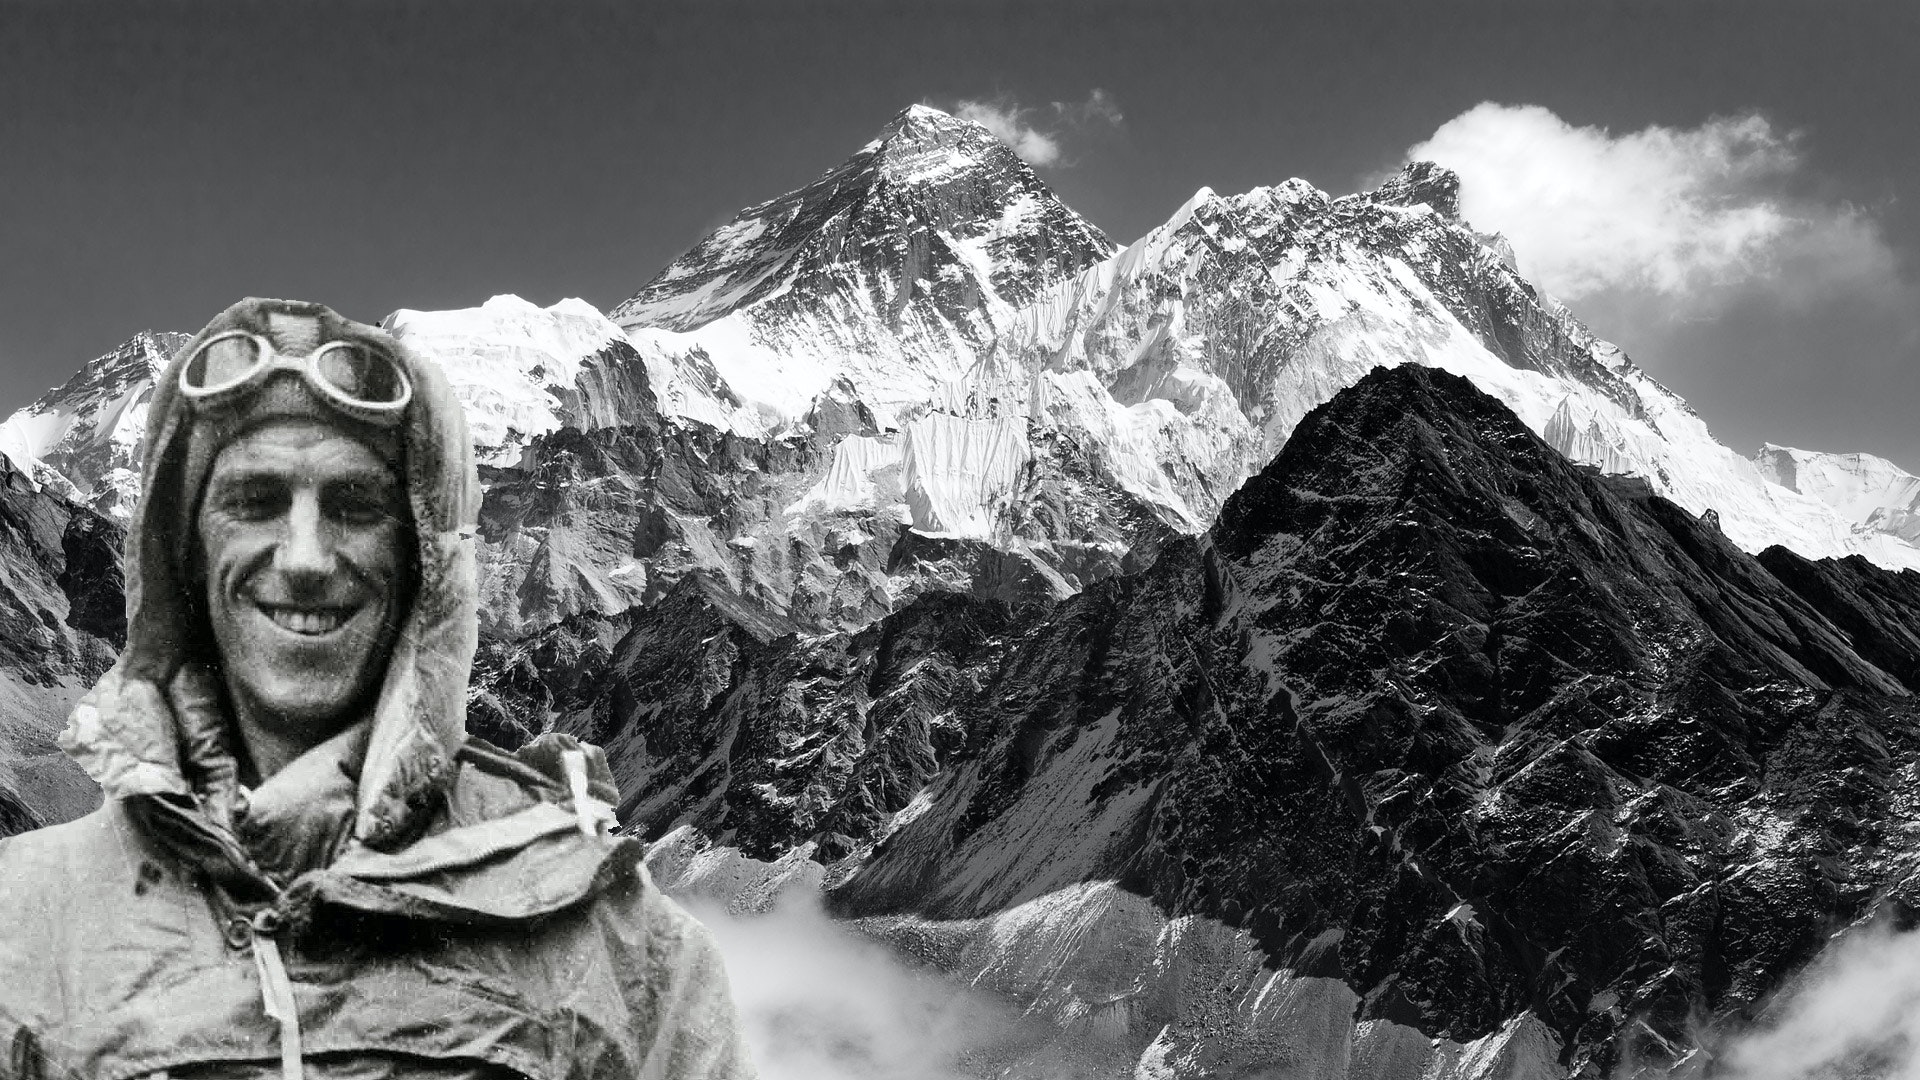 mountaineer edmund hillary on a climb